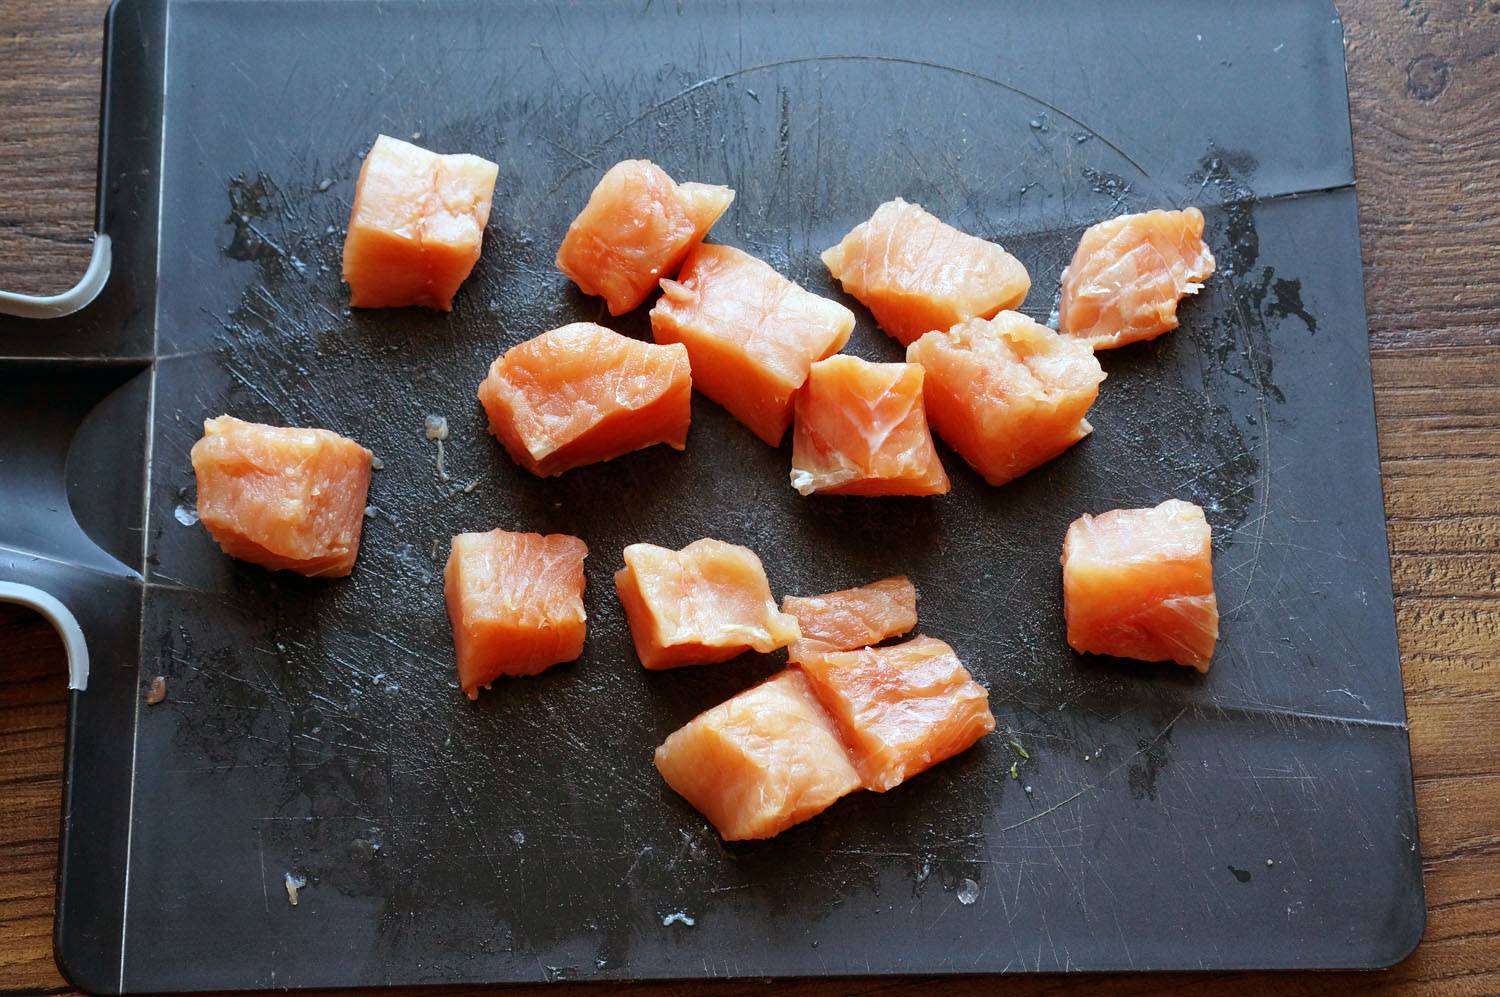 Шашлык из лосося с овощами, пошаговый фото рецепт, кулинарный блог, интернет-магазин, andychef.ru